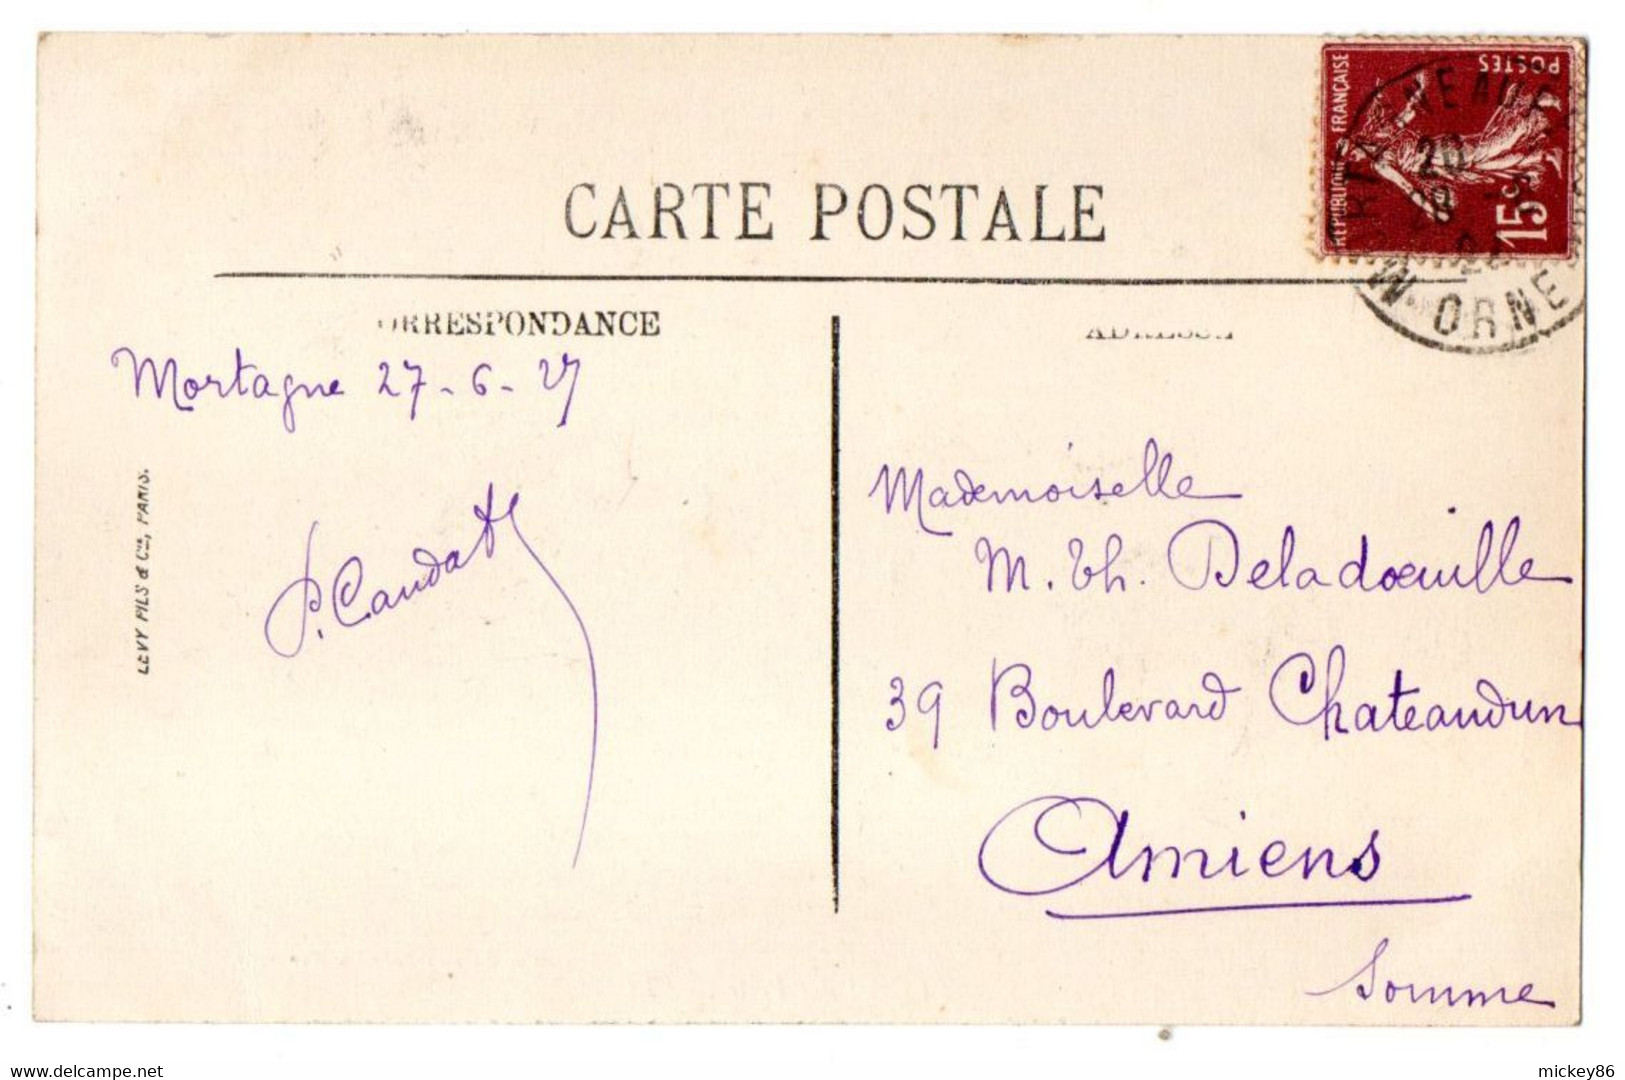 MORTAGNE --1923--La Grande Rue Et L'Hôtel Des Postes (animée,commerces)....à Saisir - Mortagne Au Perche